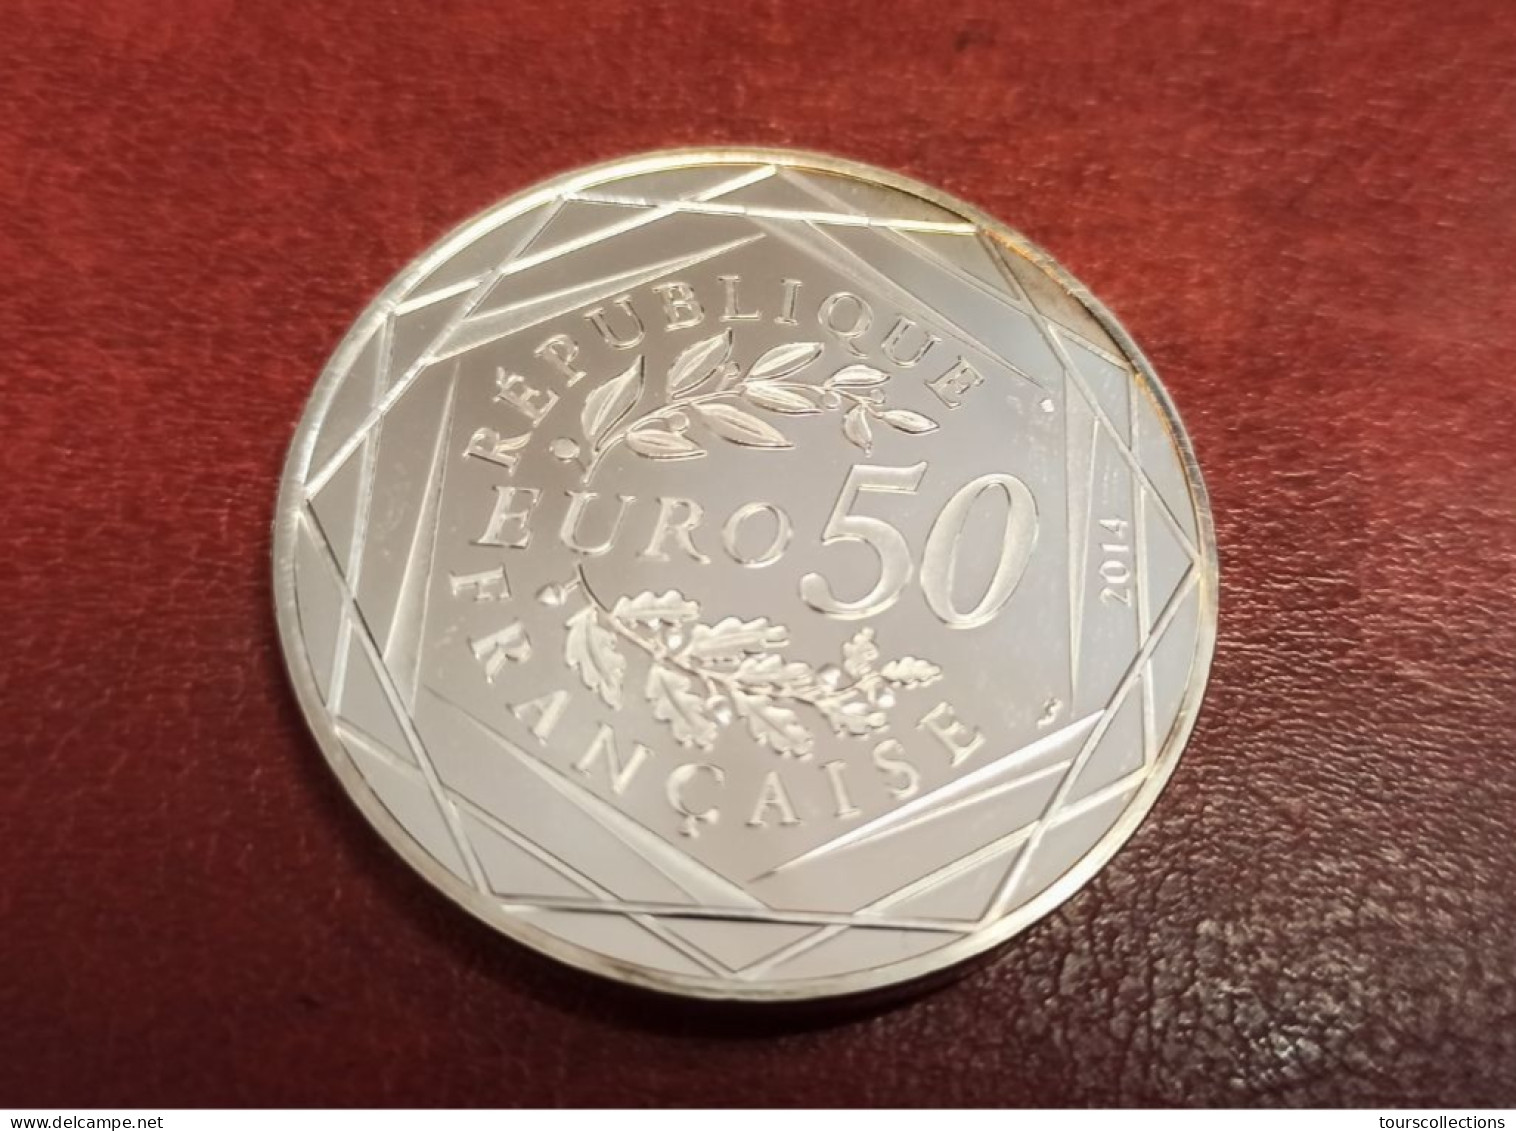 50 EUROS ARGENT FRANCE OISEAU PAIX Par Sempé - 41 Mm Pour 41 Grammes à 90% - MONNAIE DE PARIS 2014 Printemps / Eté - Frankrijk